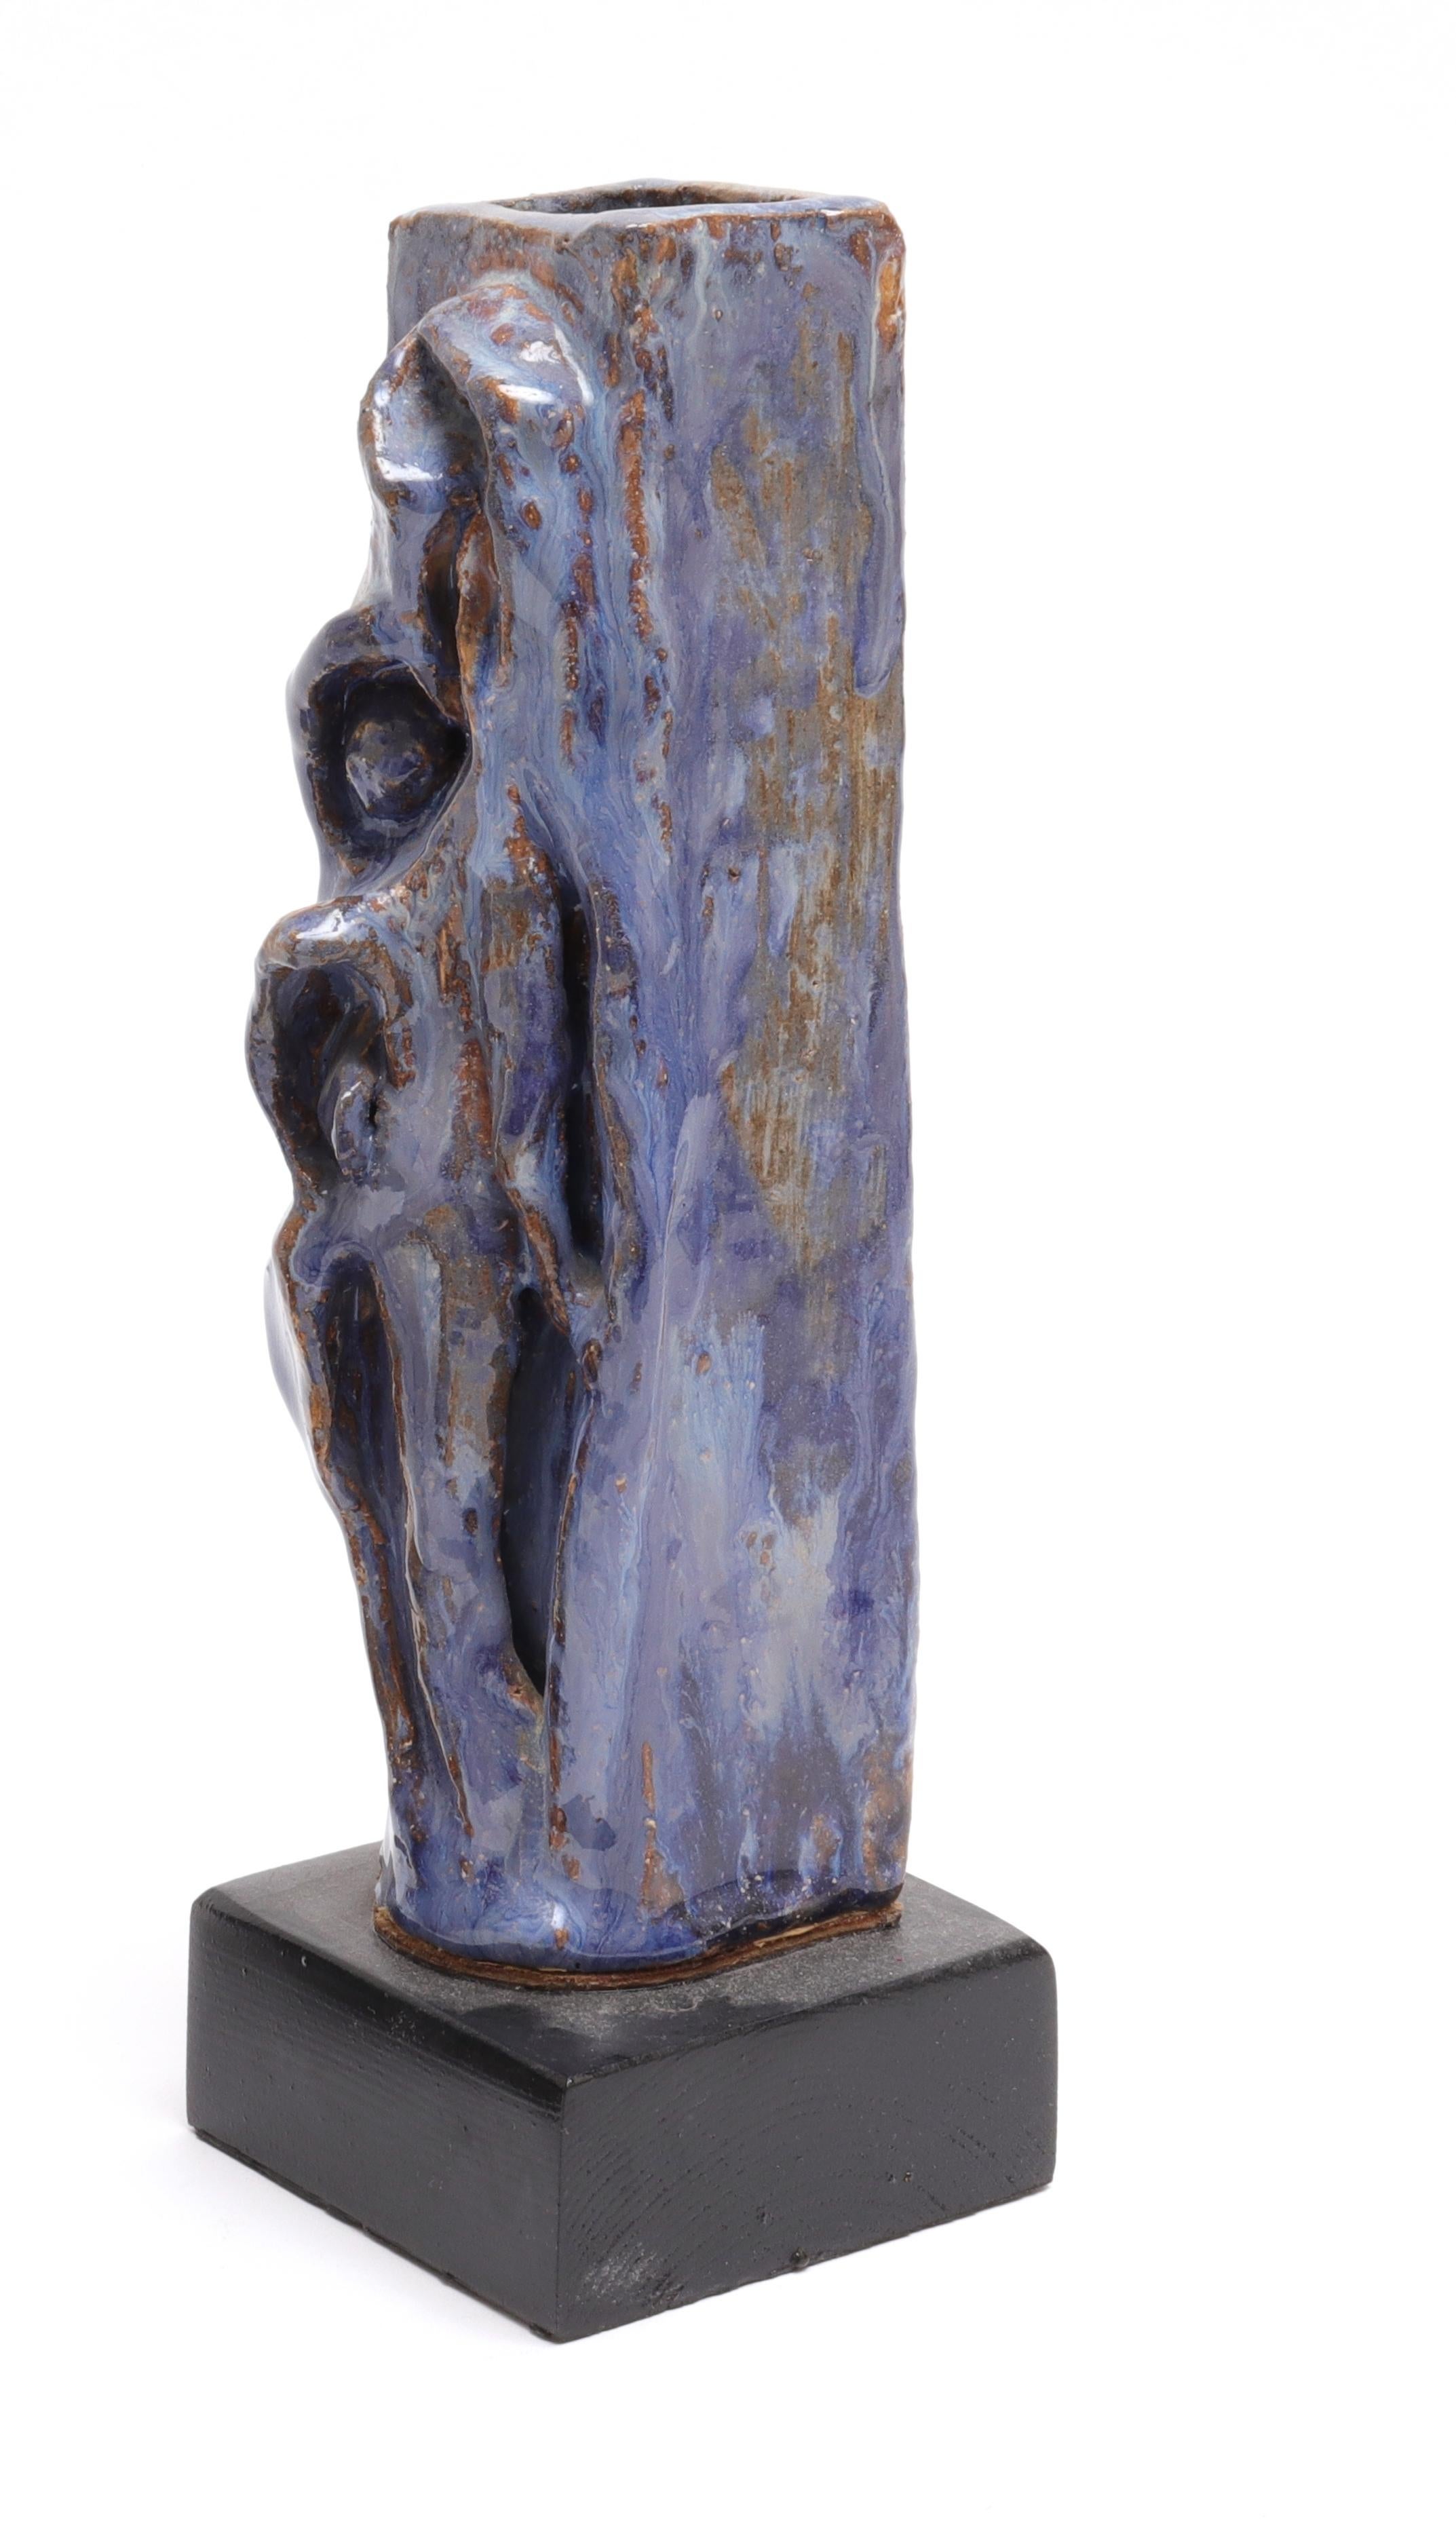 Vase en poterie d'art contemporain à glaçure bleu-vert, forme rectangulaire haute avec décoration sculptée de figures stylisées, monté sur une base en bois.